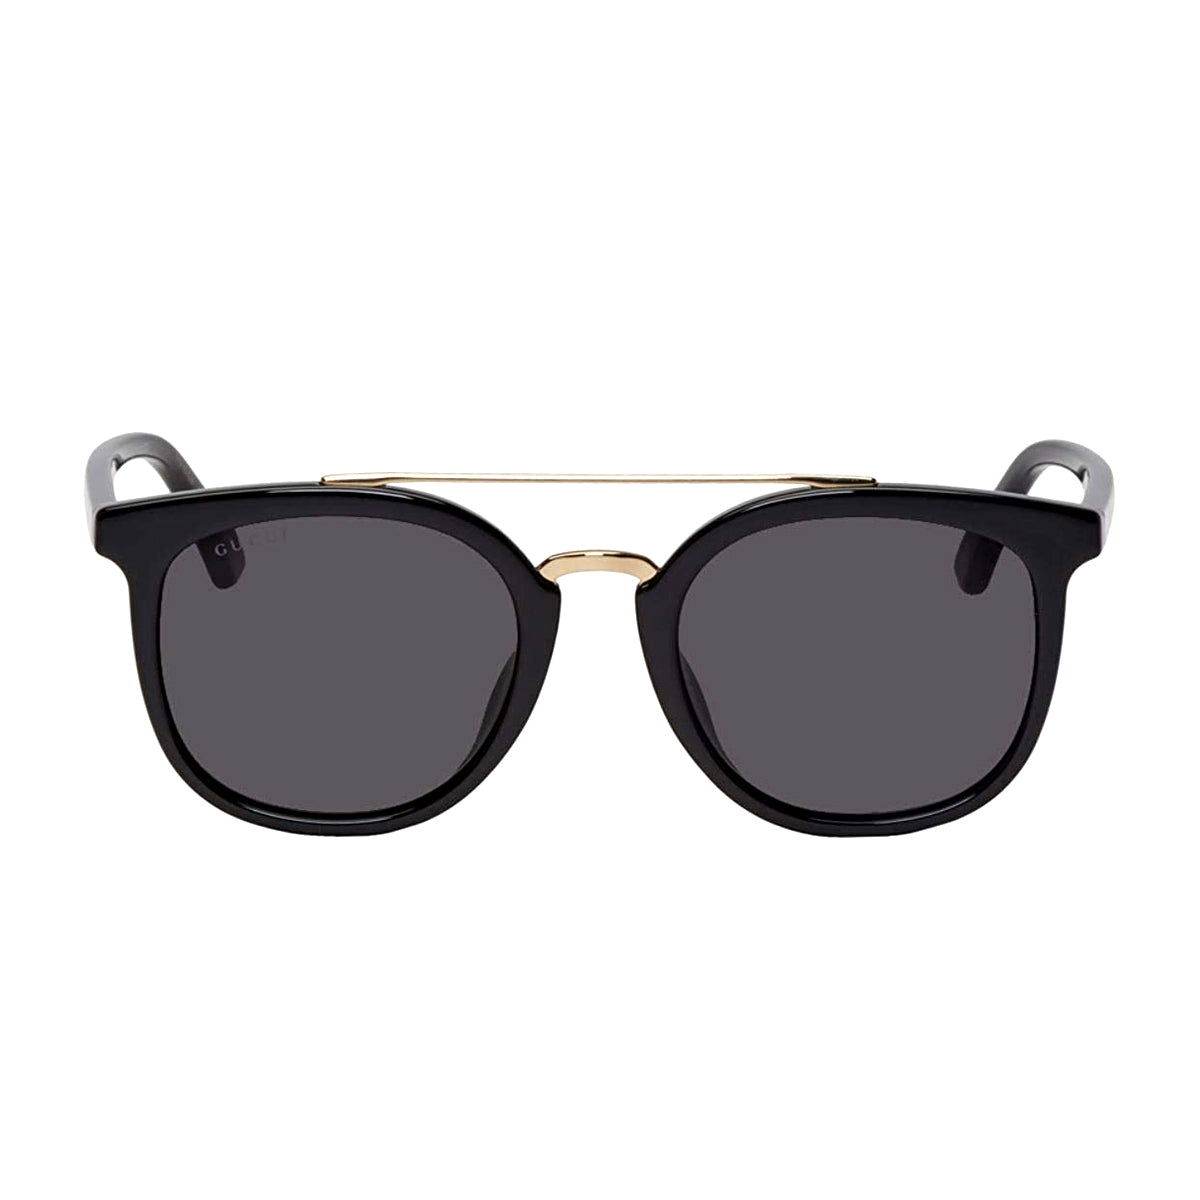 Gucci GG0403SA-001 Sunglasses